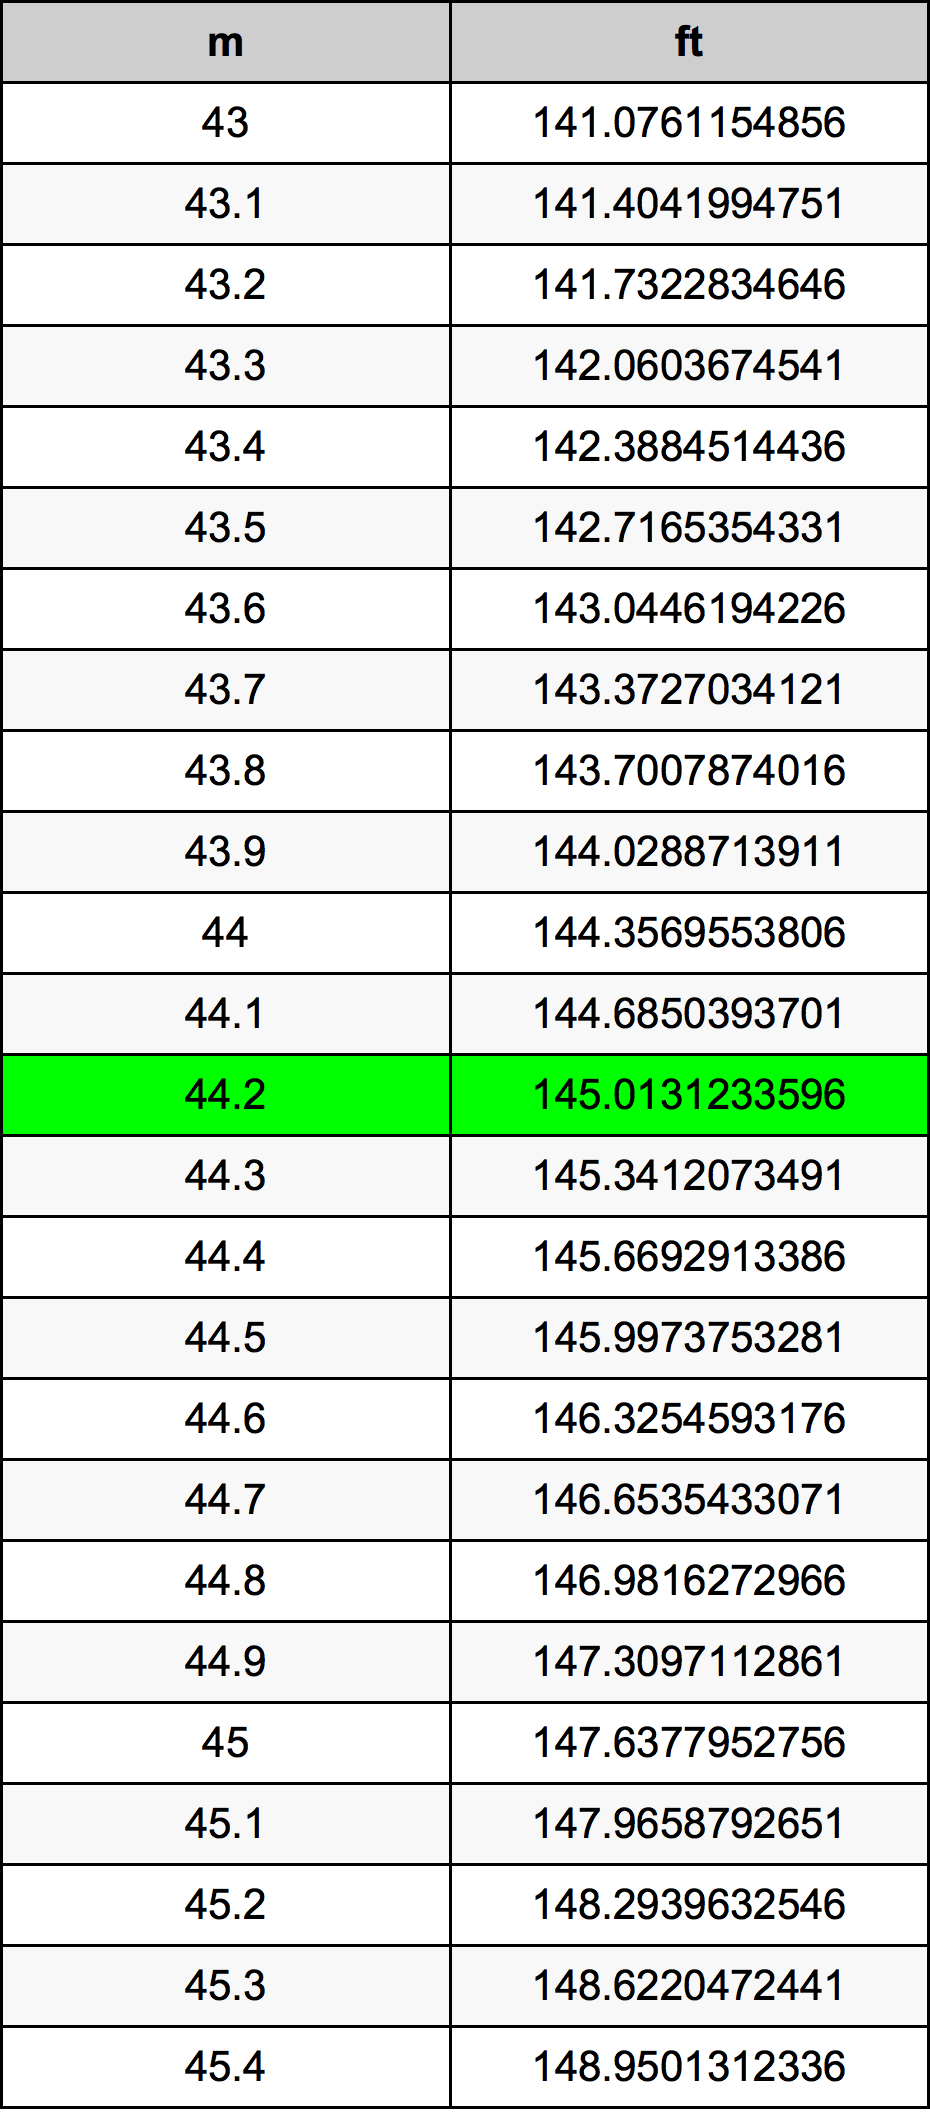 44.2 Metru tabelul de conversie